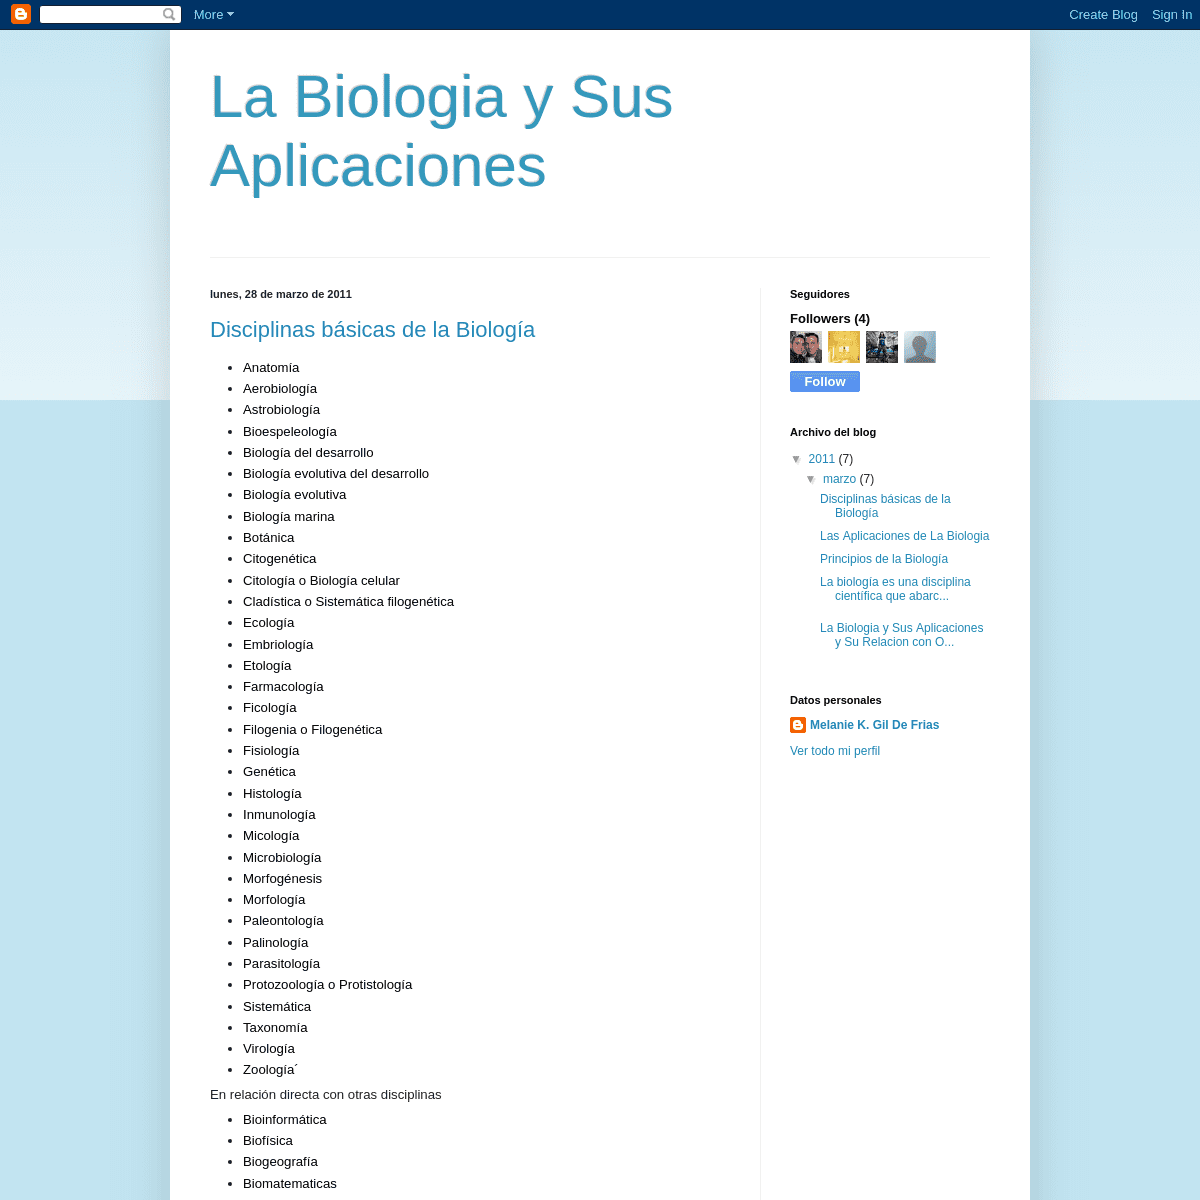 A complete backup of wwwbiologiarelaciones.blogspot.com